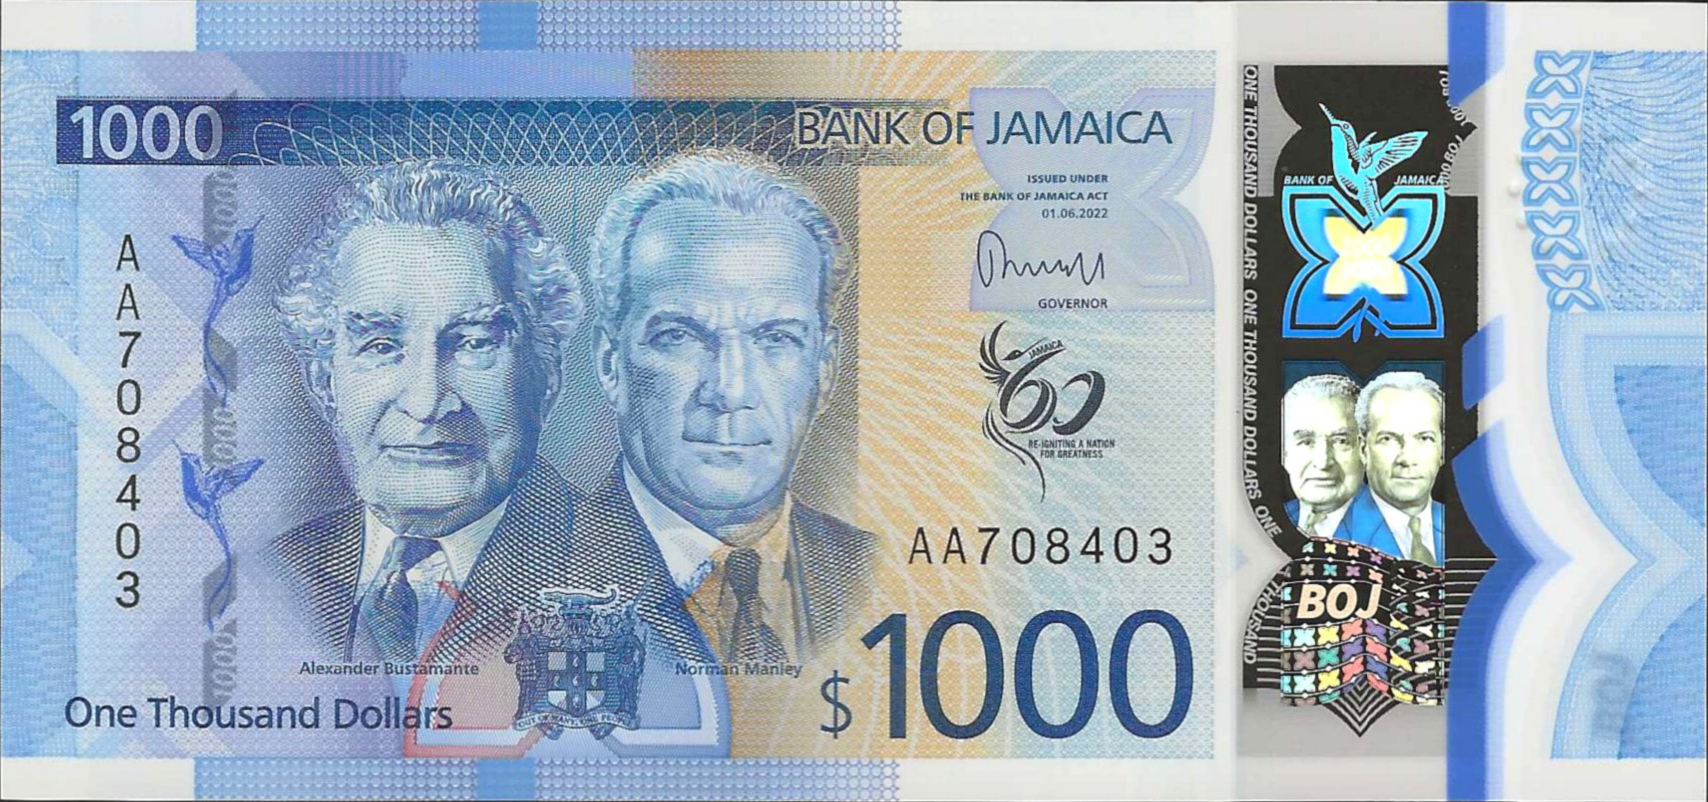 Jamaica BOJ 1000 Dollars 2022.06.01 B254a PNL AA 708403 F 